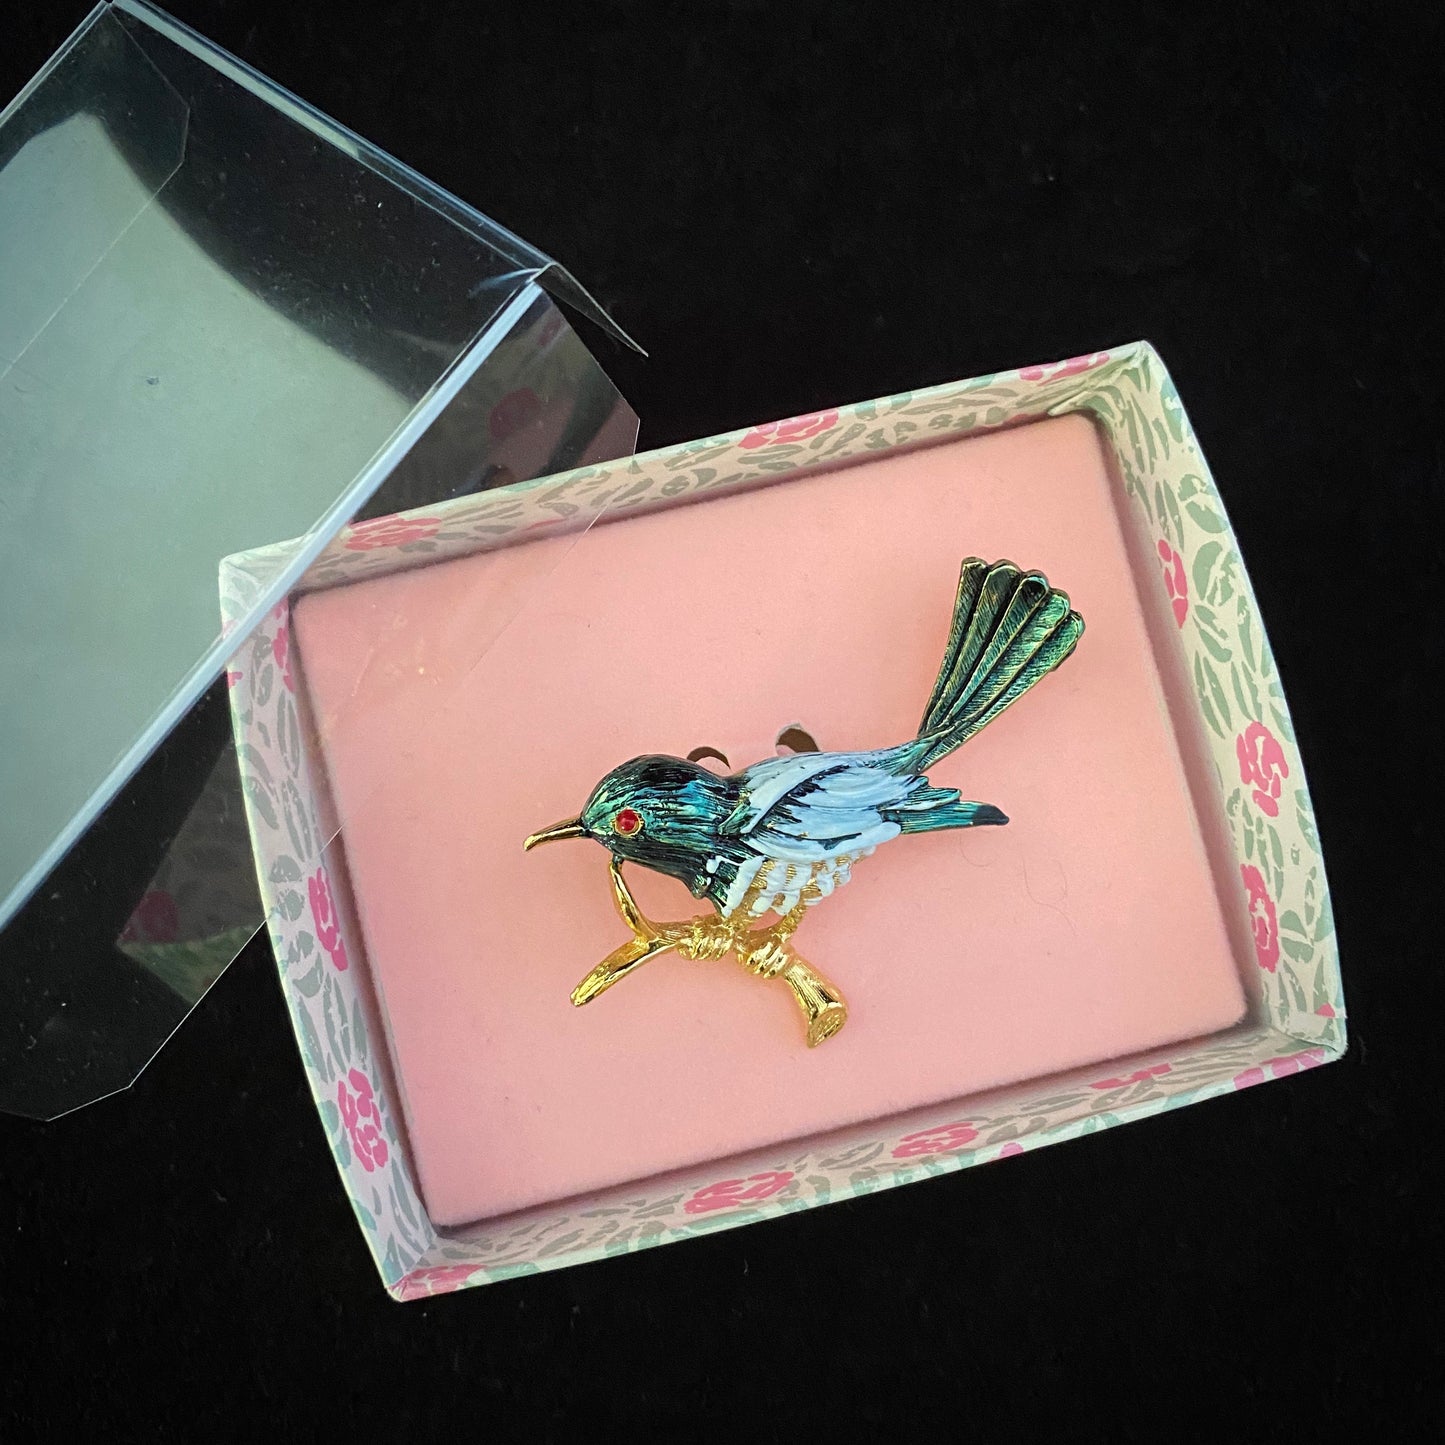 1980s Gerry's Bird Brooch In Original Box - Retro Kandy Vintage